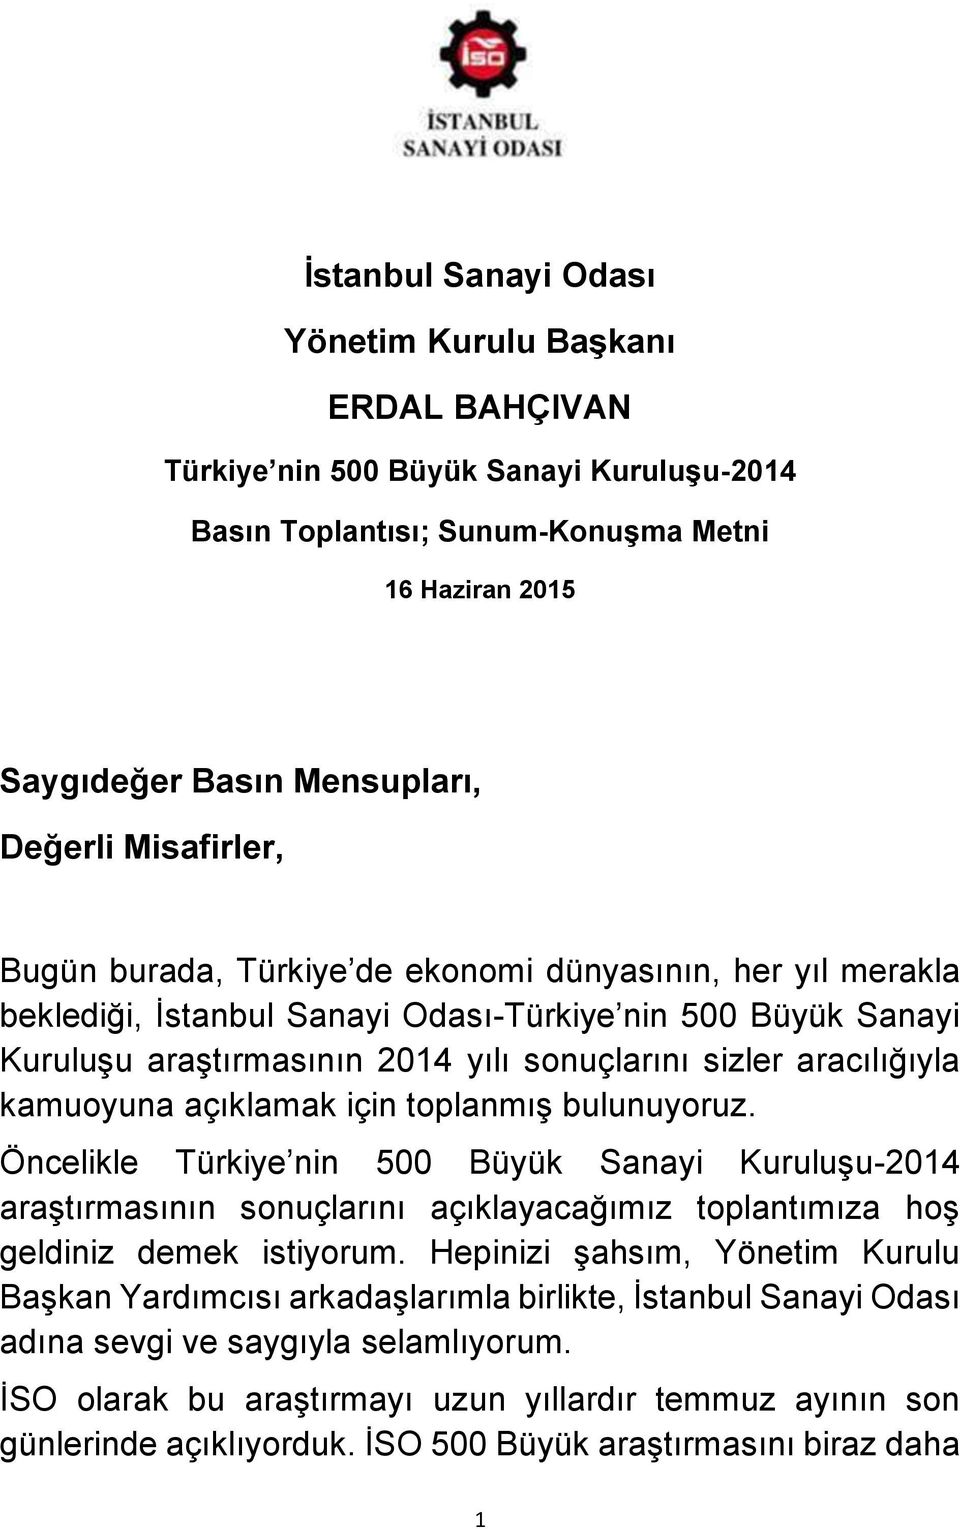 aracılığıyla kamuoyuna açıklamak için toplanmış bulunuyoruz. Öncelikle Türkiye nin 500 Büyük Sanayi Kuruluşu-2014 araştırmasının sonuçlarını açıklayacağımız toplantımıza hoş geldiniz demek istiyorum.